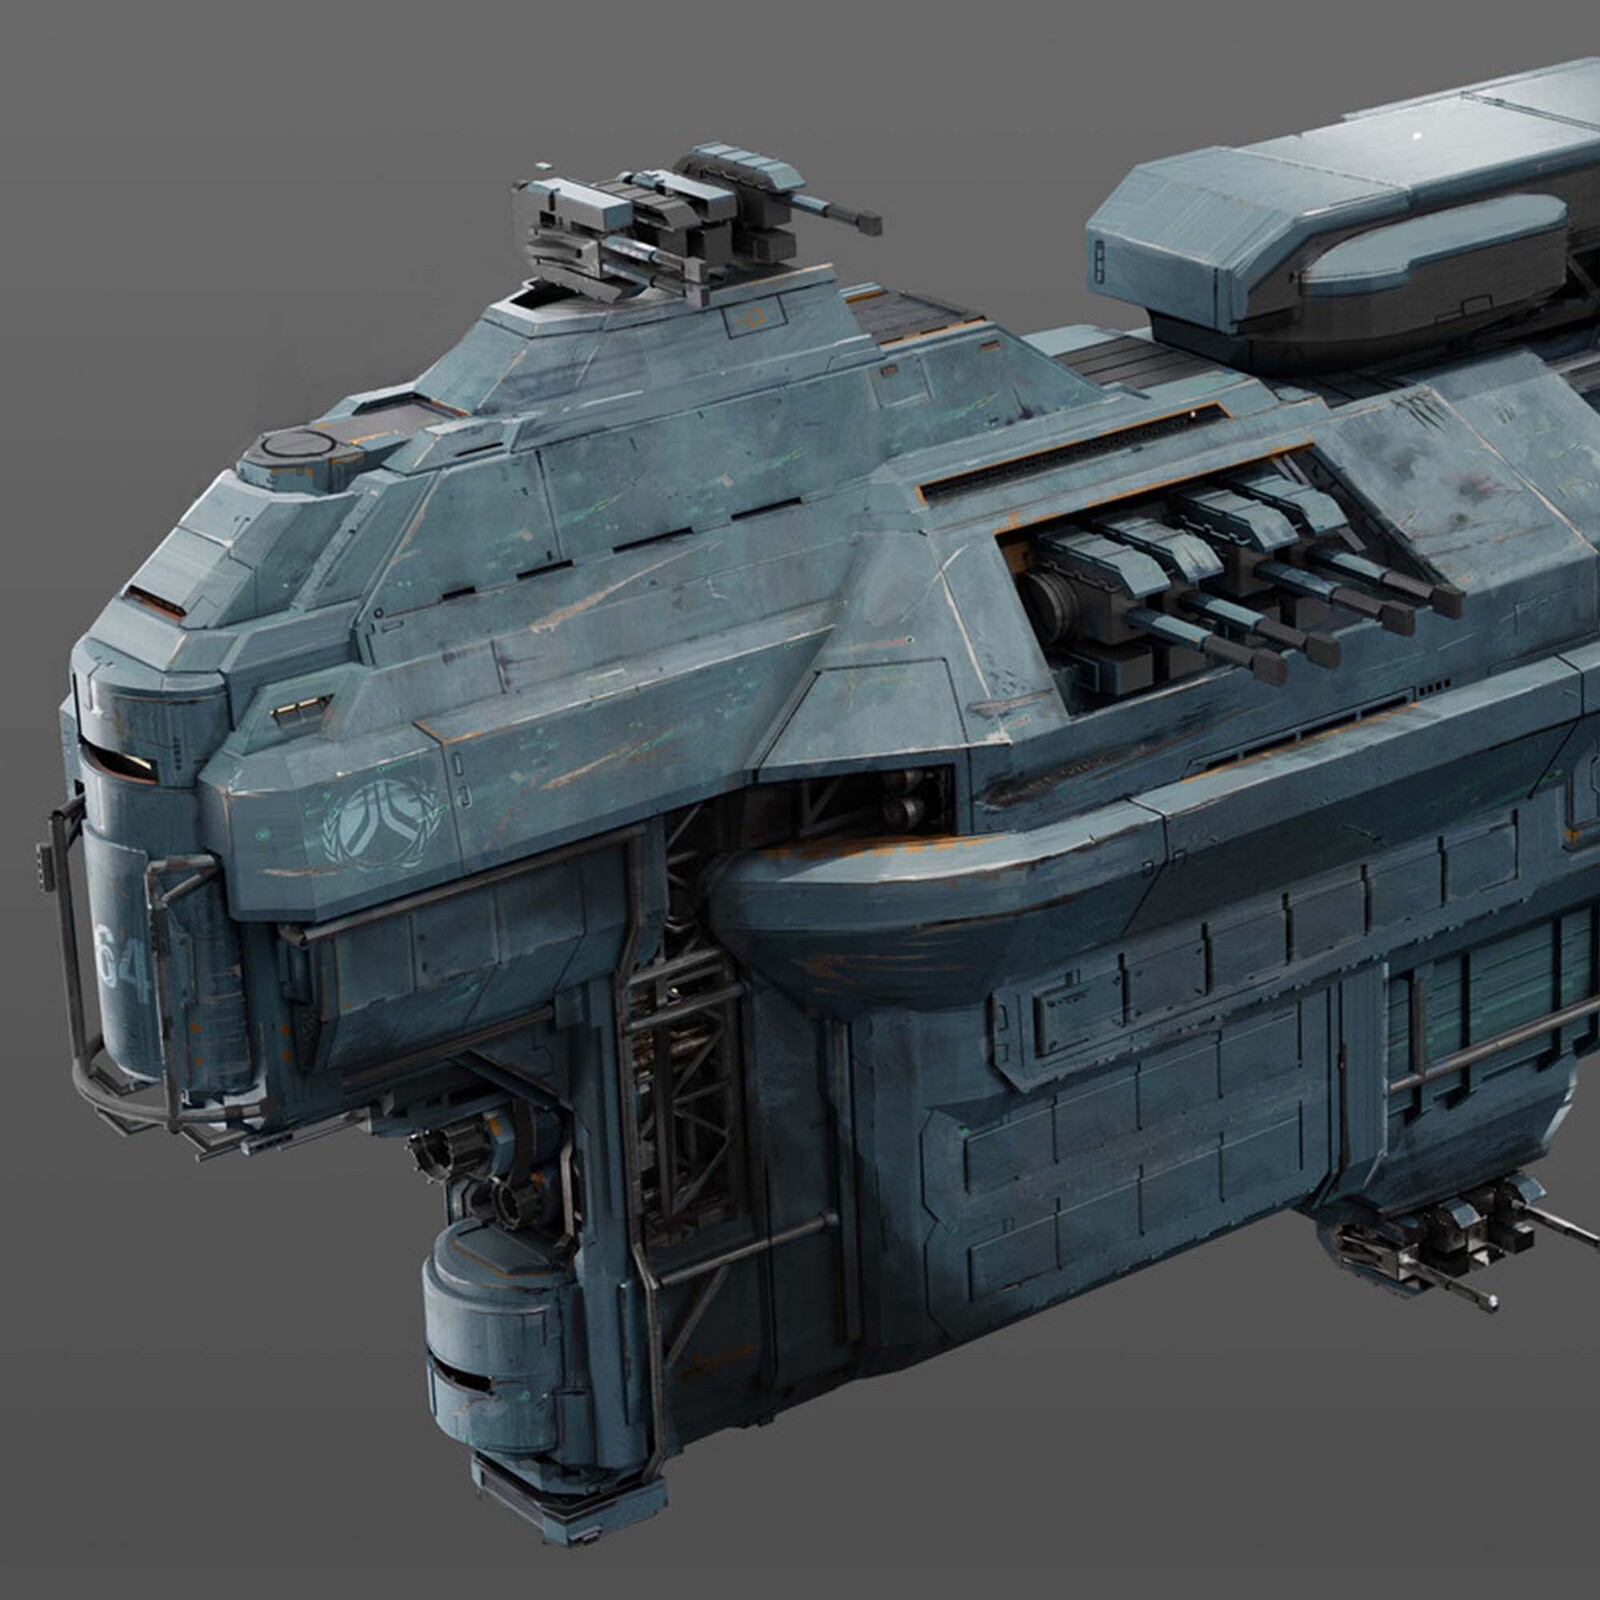 Ship design 2 - Sci Fi RPG